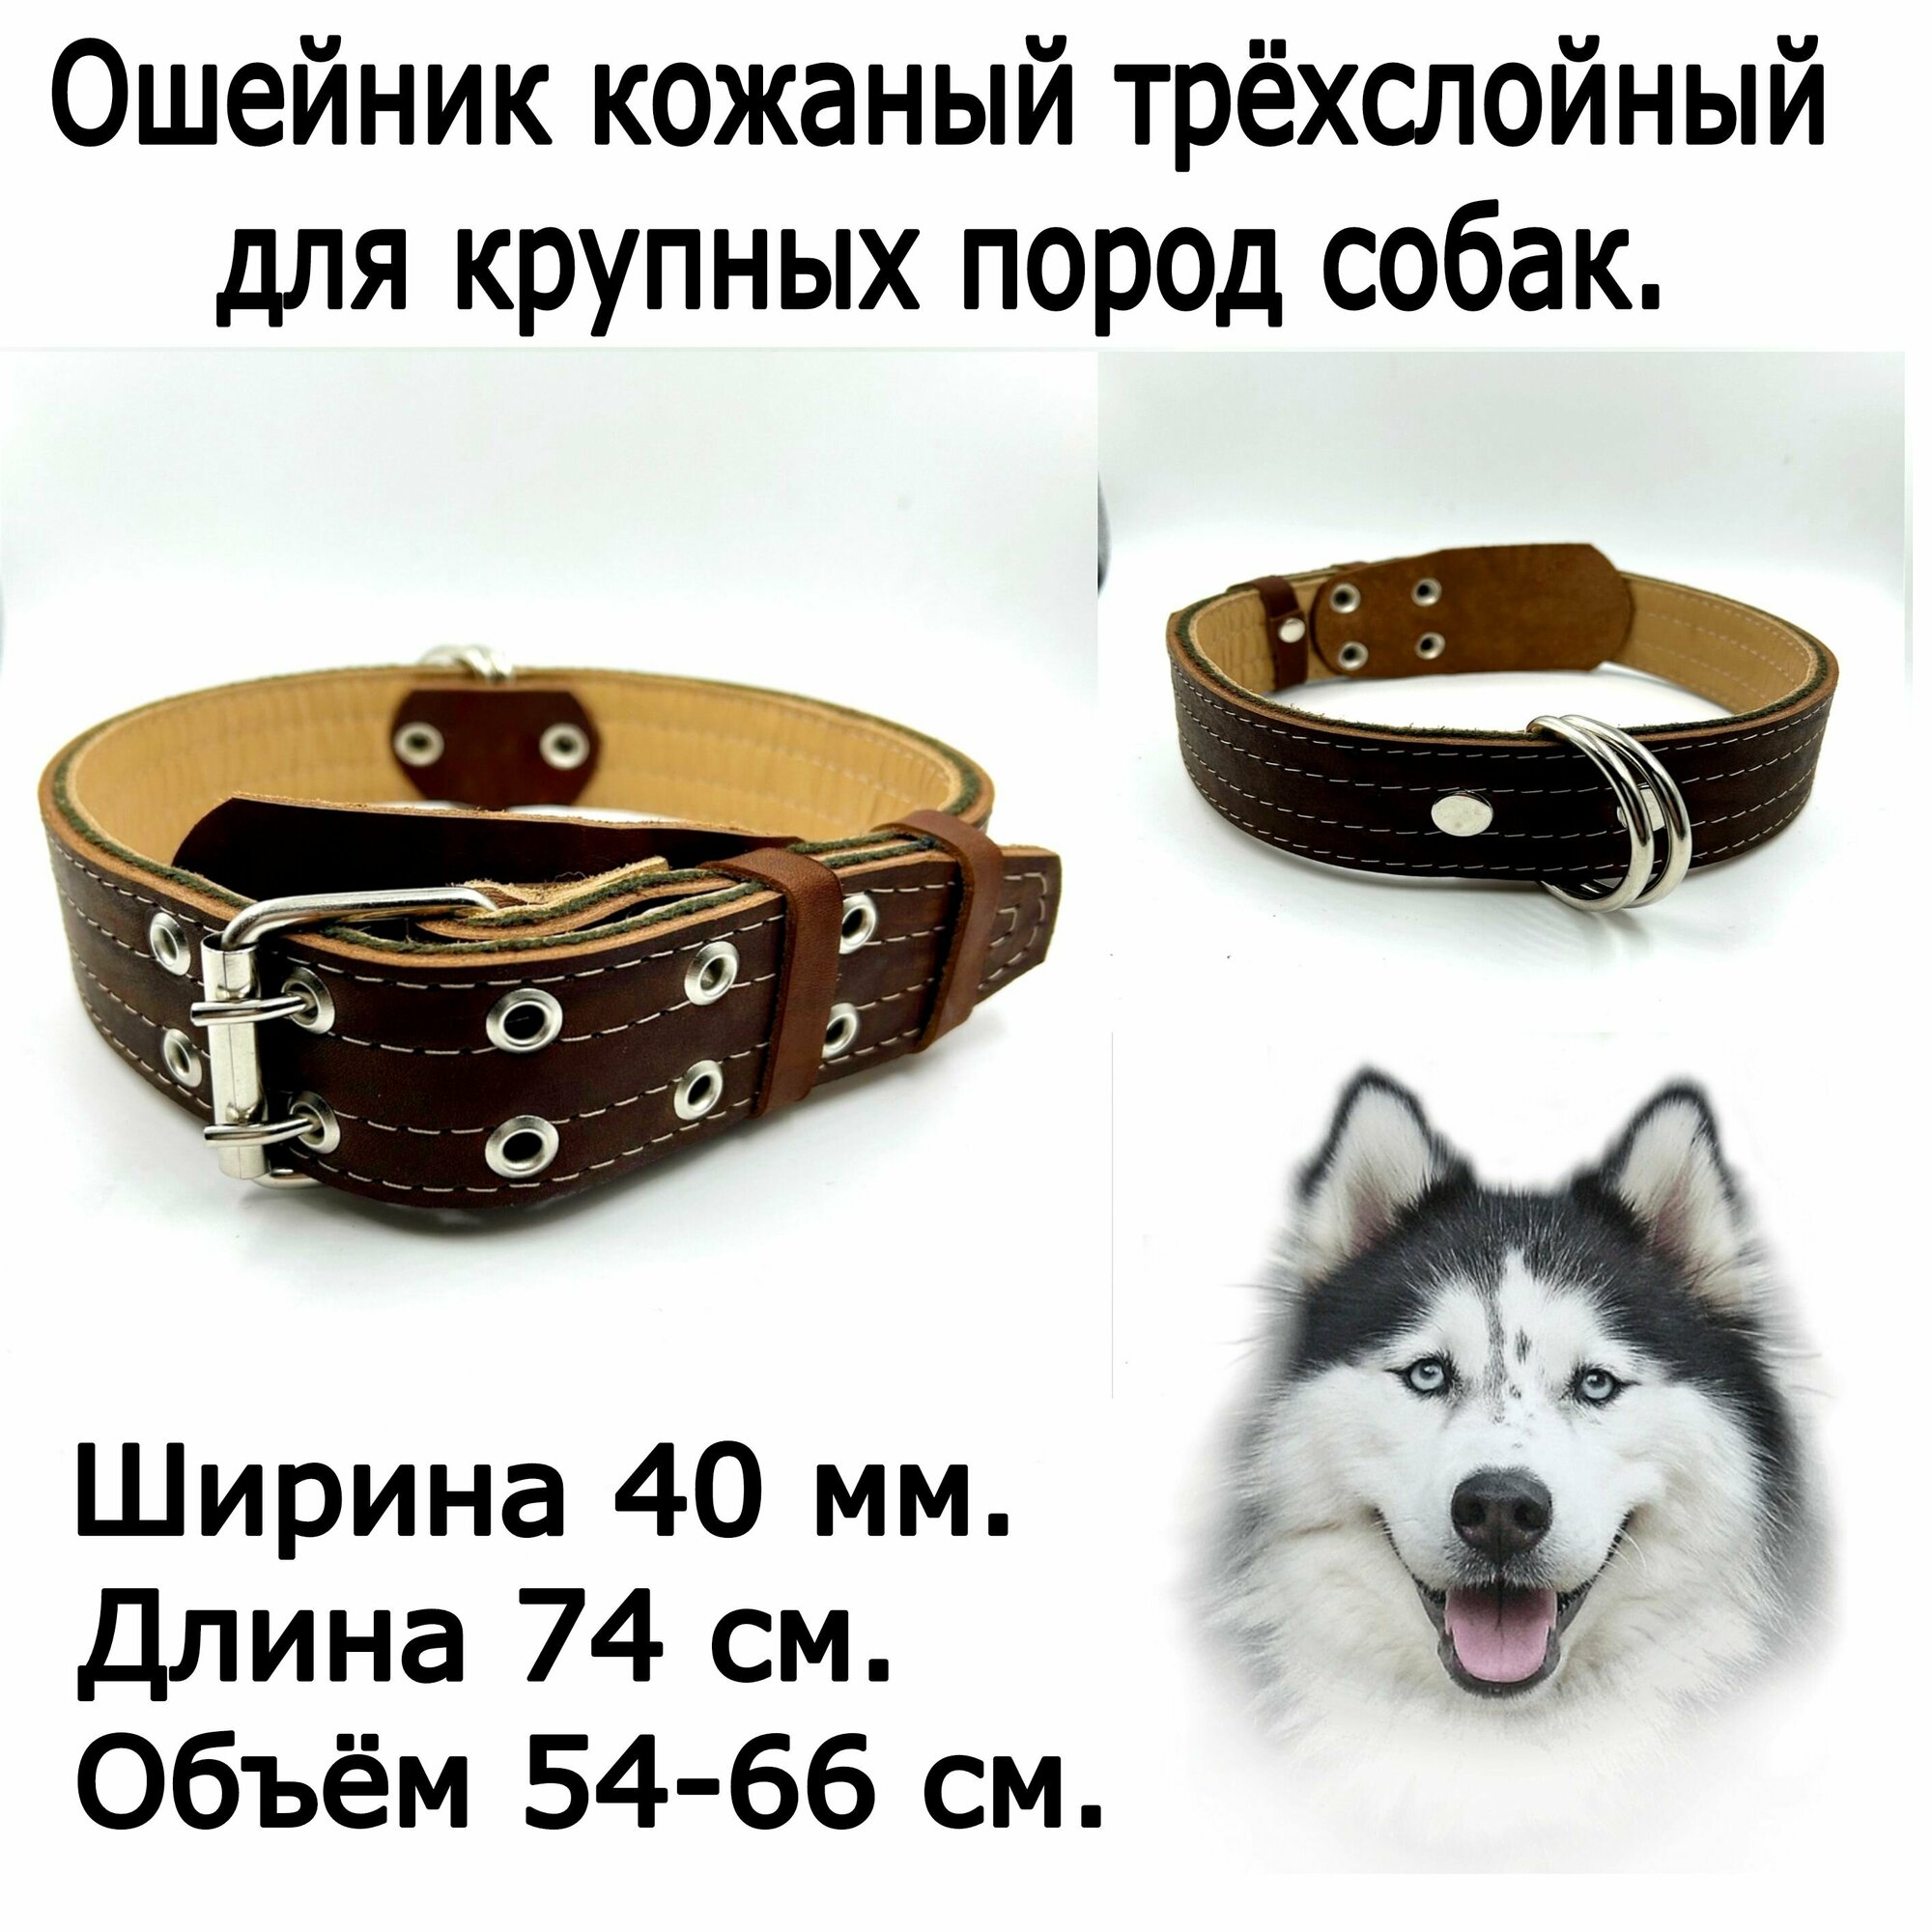 Кожаный ошейник трехслойный для крупных пород собак. Ширина 40 мм. Длина 74 см. Объем 54-66 см.